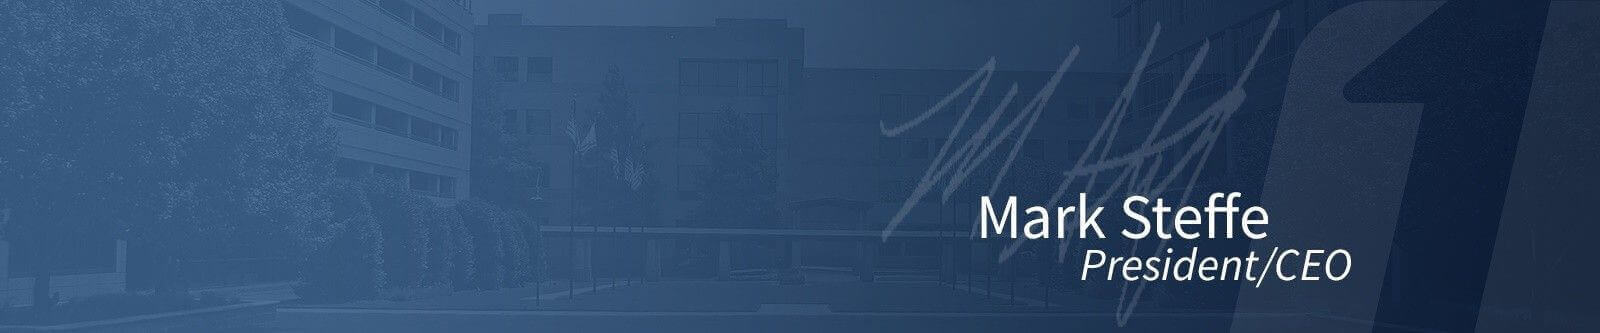 Mark Steffe President/CEO banner image